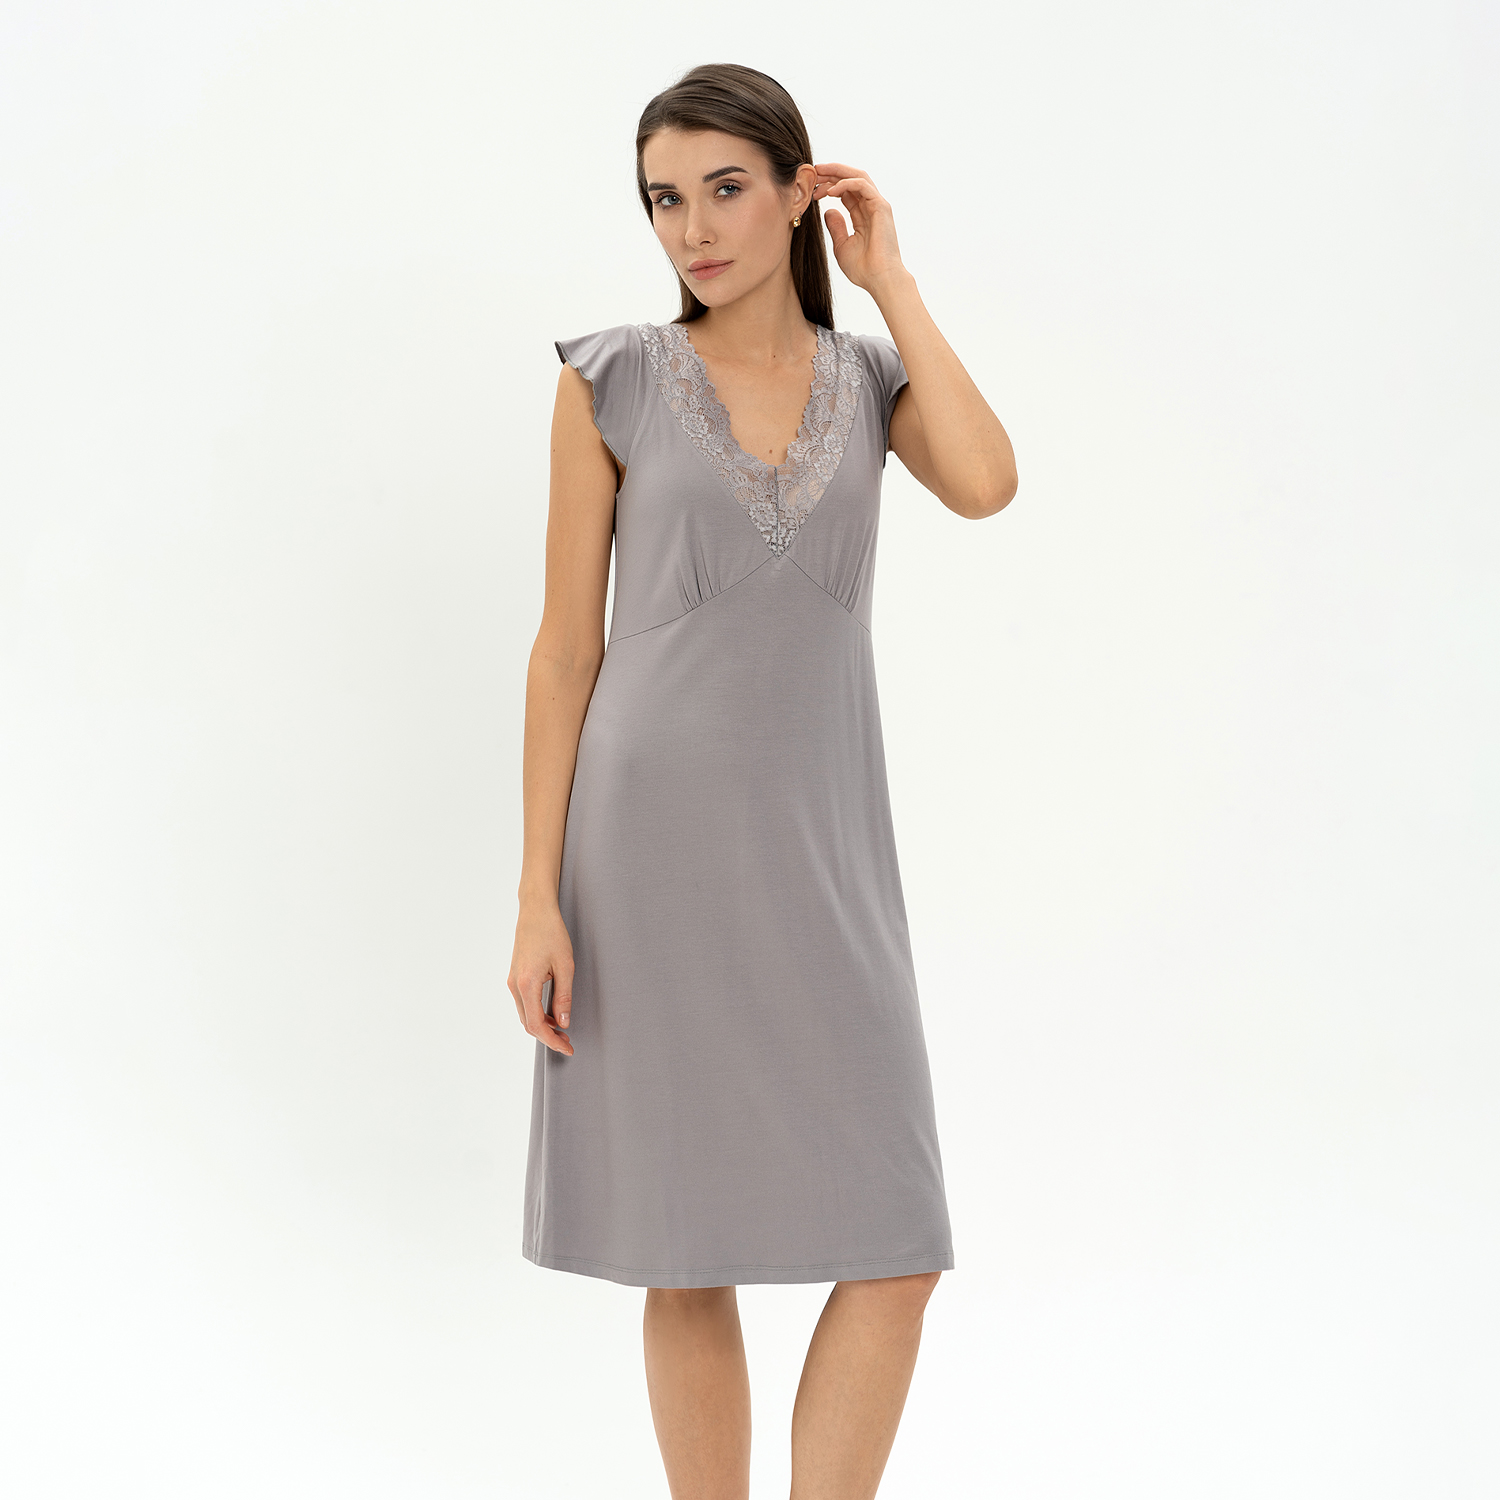 Сорочка Doris Cooper IV CozyHome, цвет серый, размер 42-44